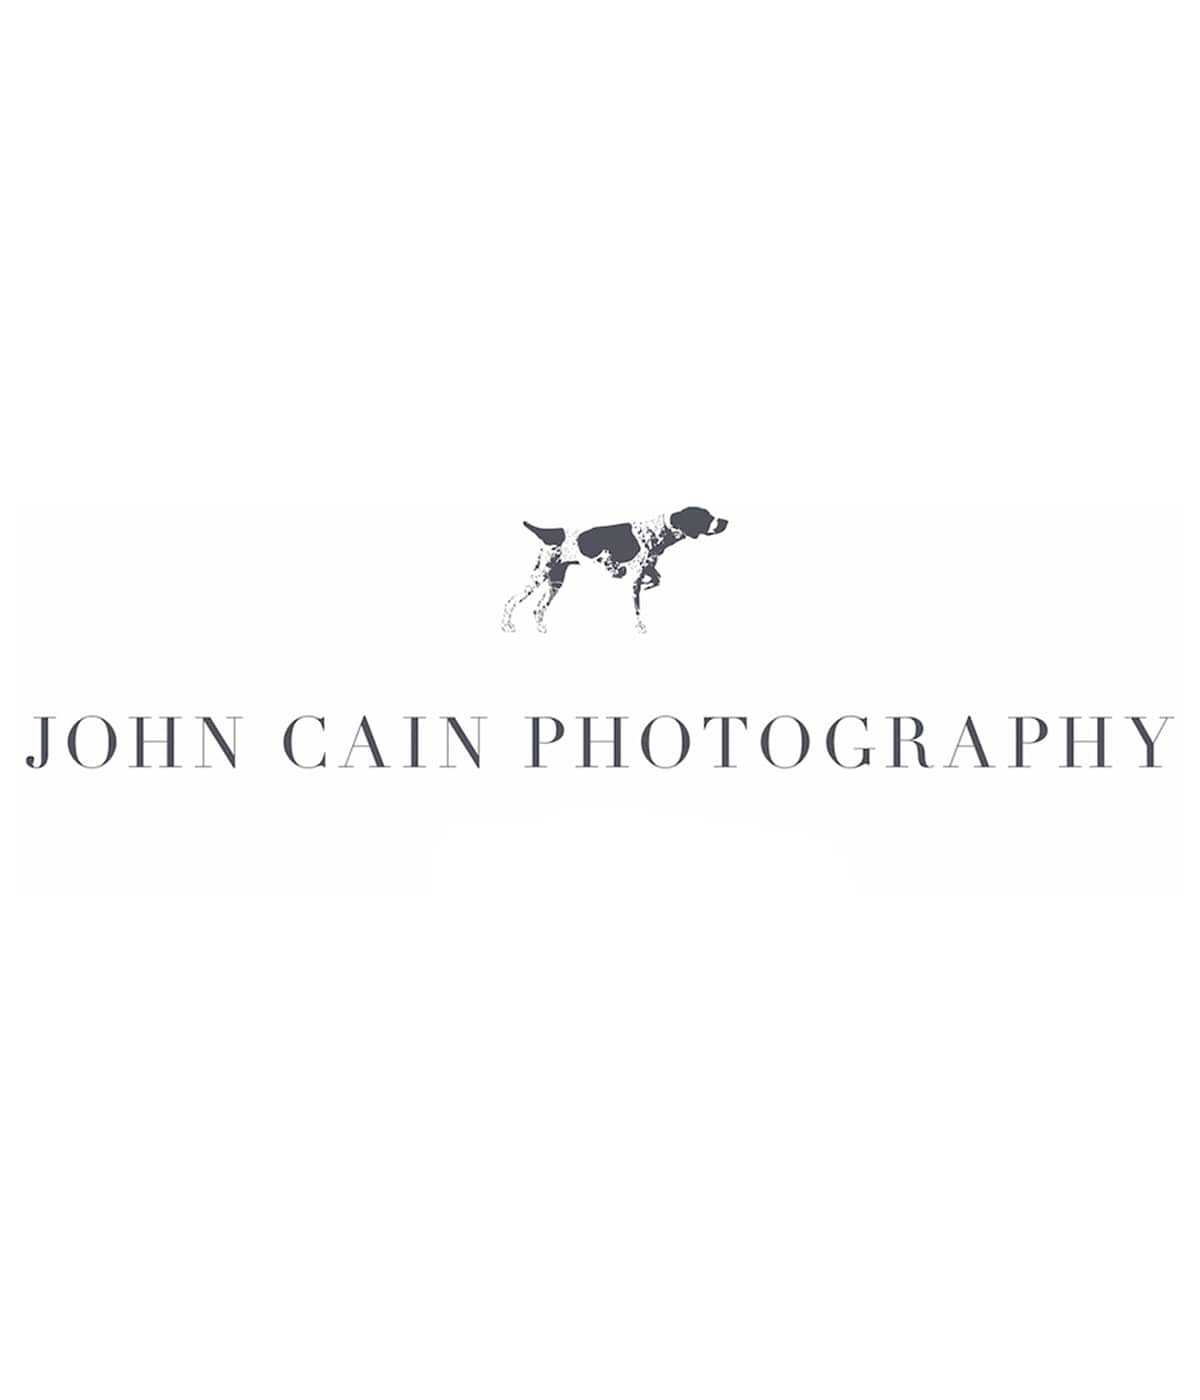 John Cain Photography Logo - dbandrea